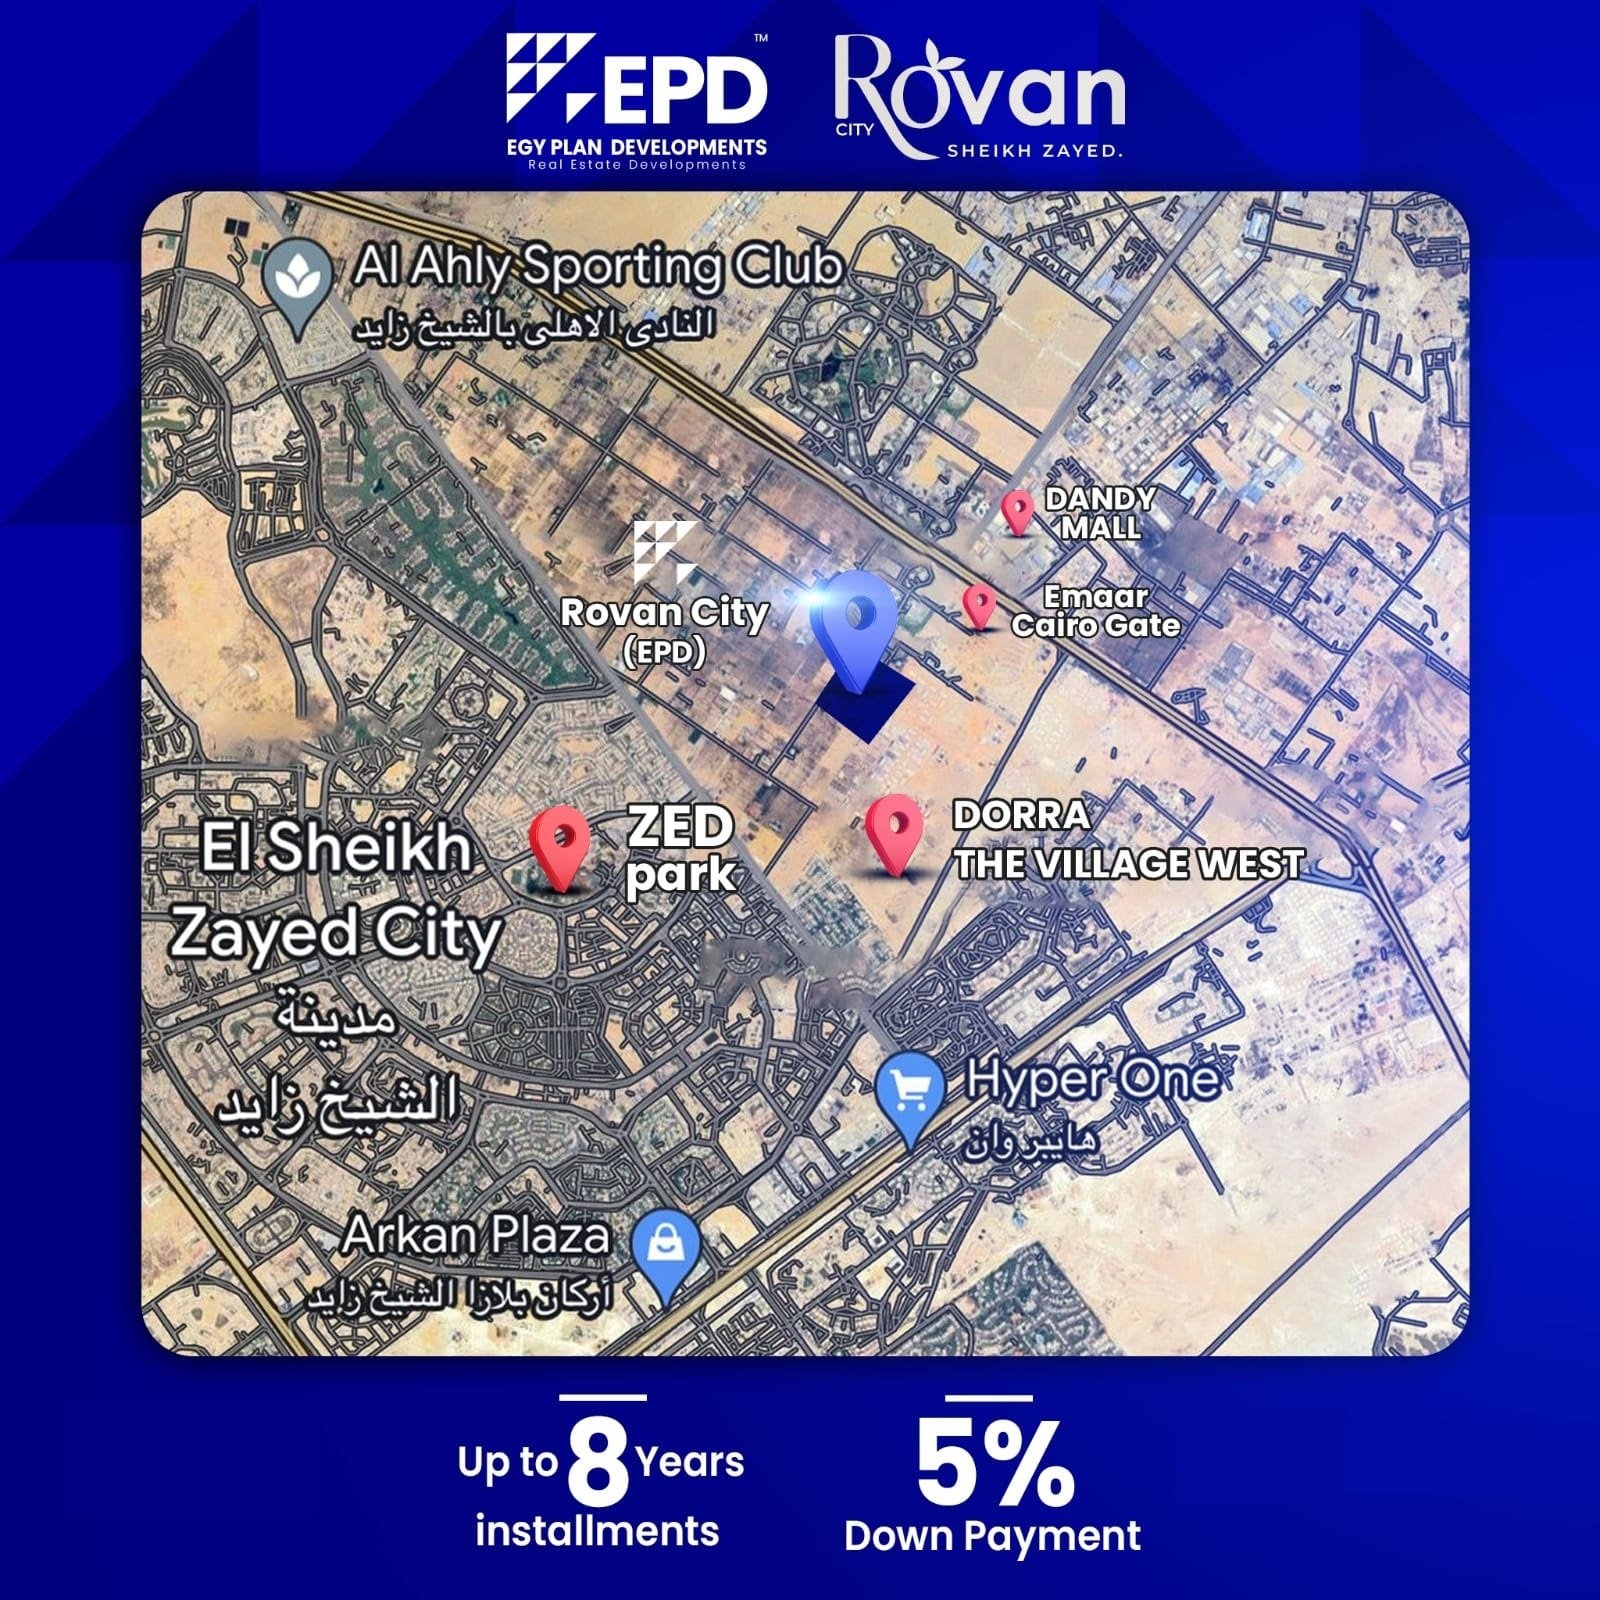 Rovan City Sheikh Zayed